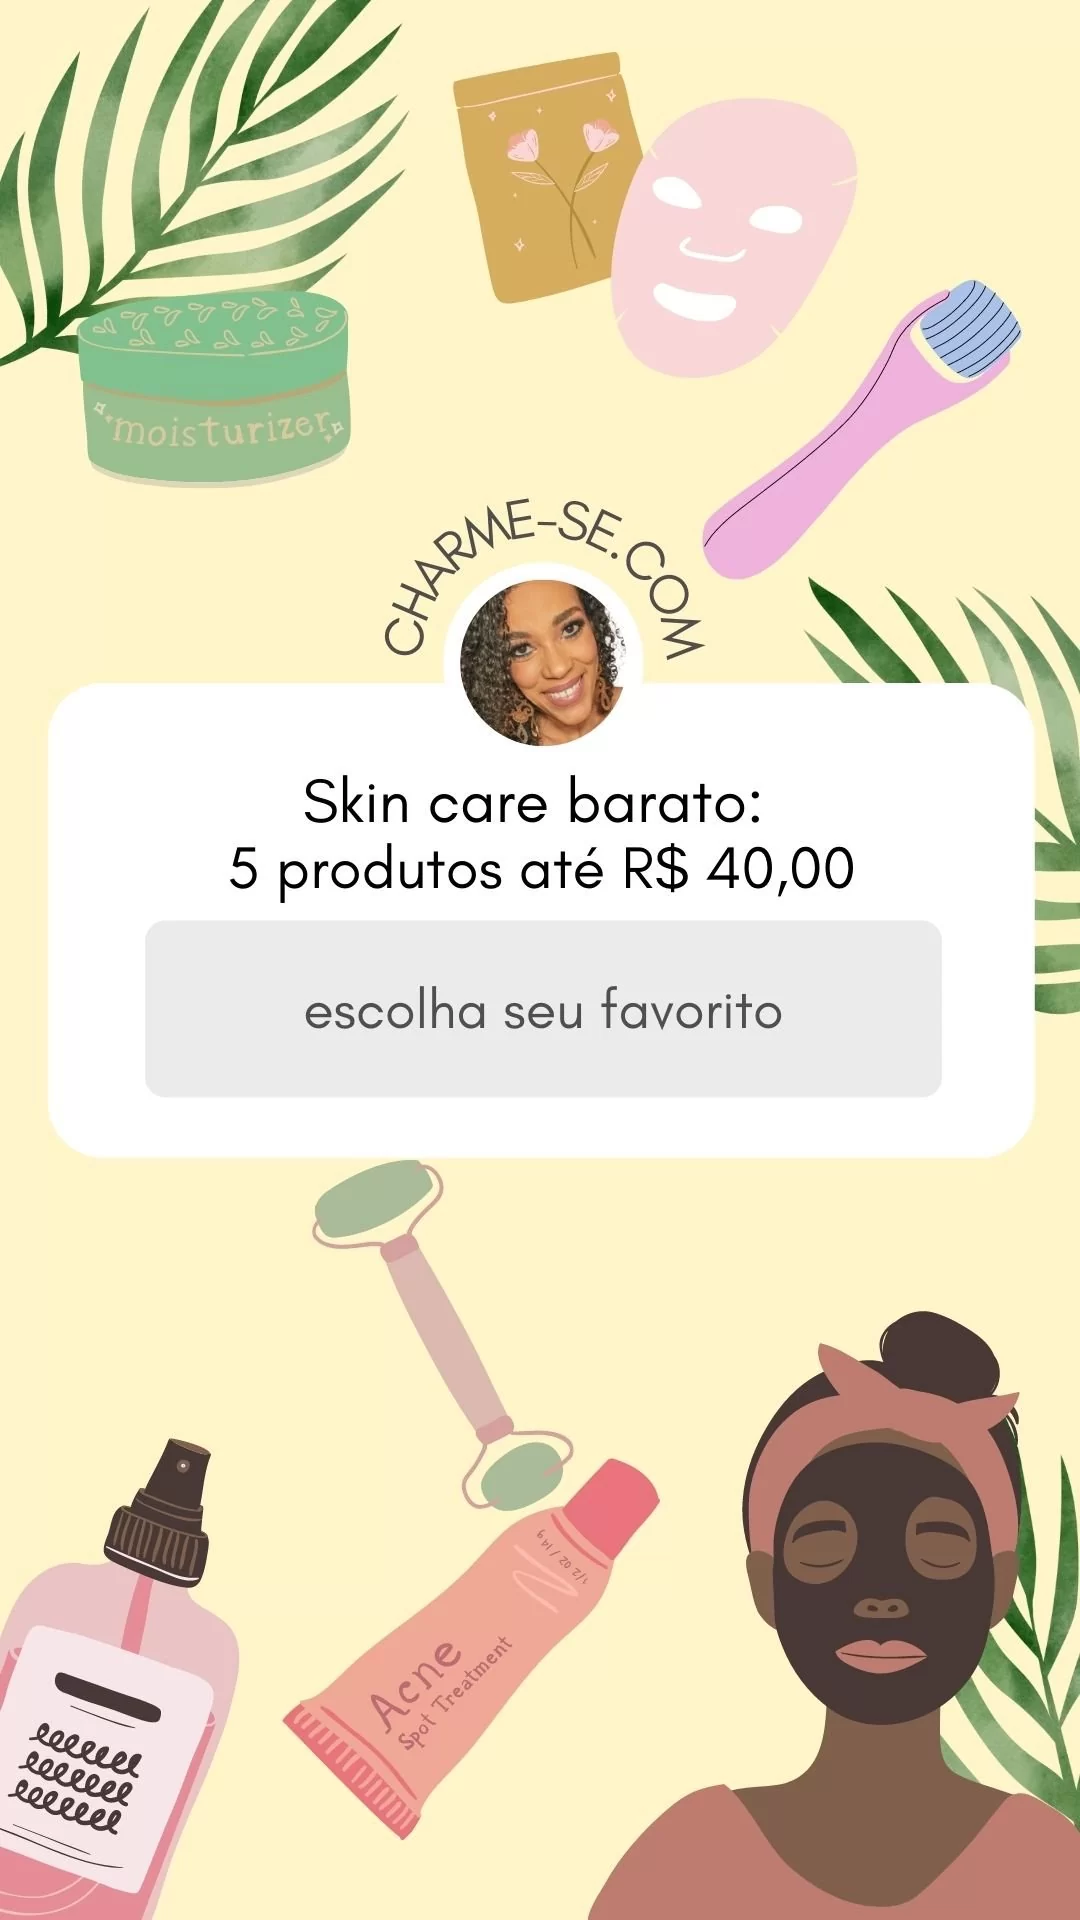 Skin care barato: 5 produtos até R$ 40,00